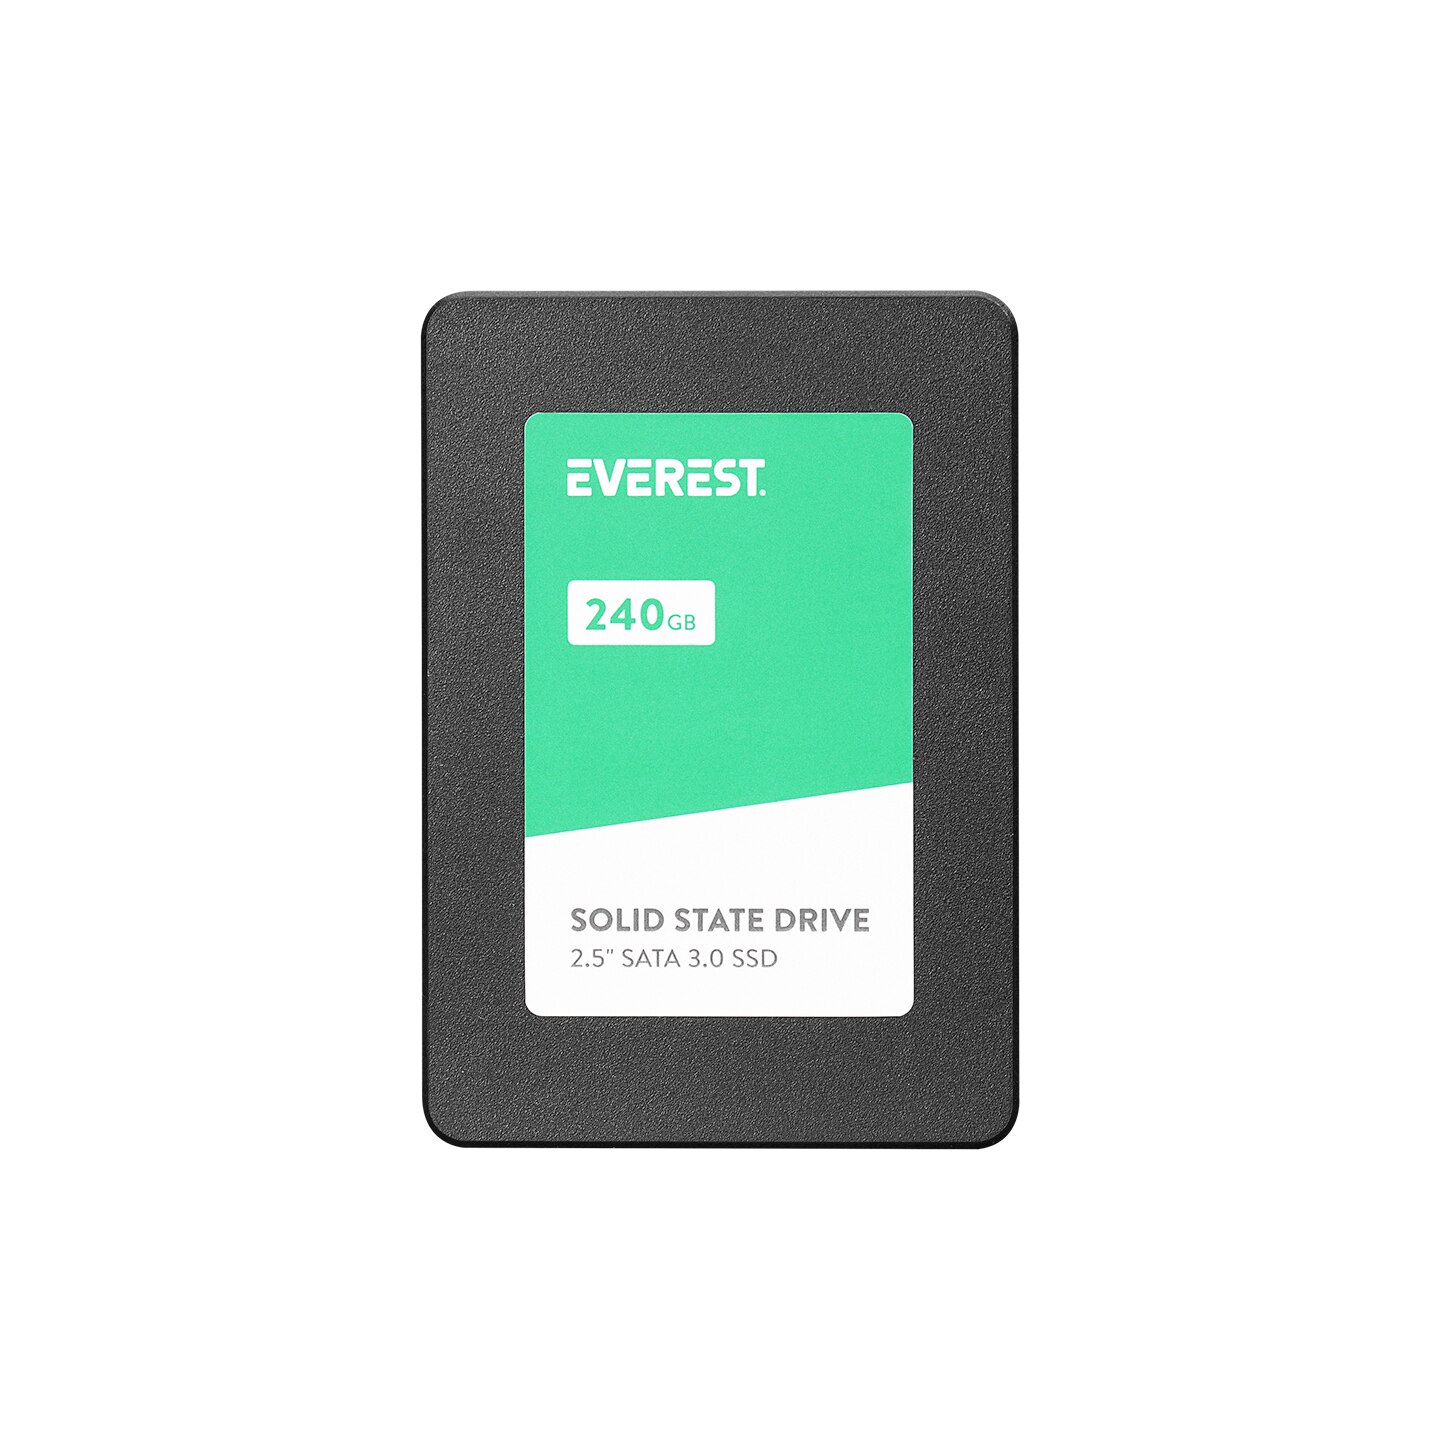 Everest ES240SH 240 GB 2.5" SATA 3 520MB/420MB SMI + Hynix 3D Nand Flash SSD